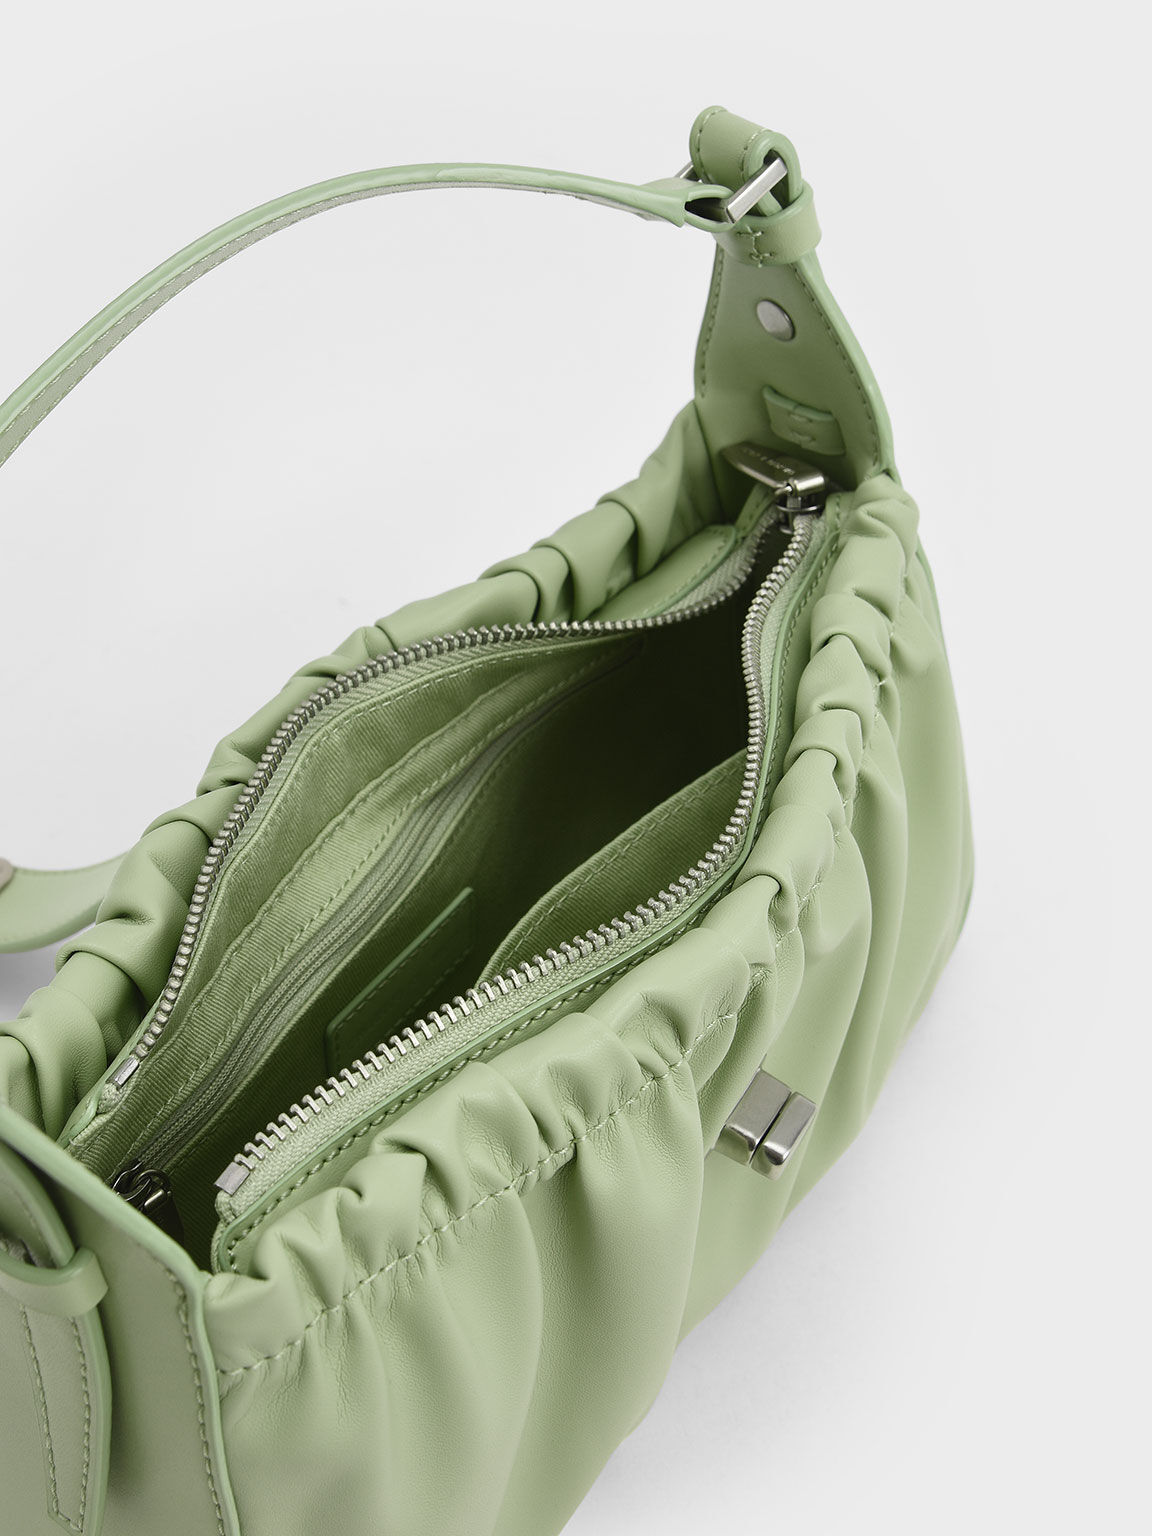 Enya Ruched Turn-Lock Shoulder Bag, Mint Green, hi-res